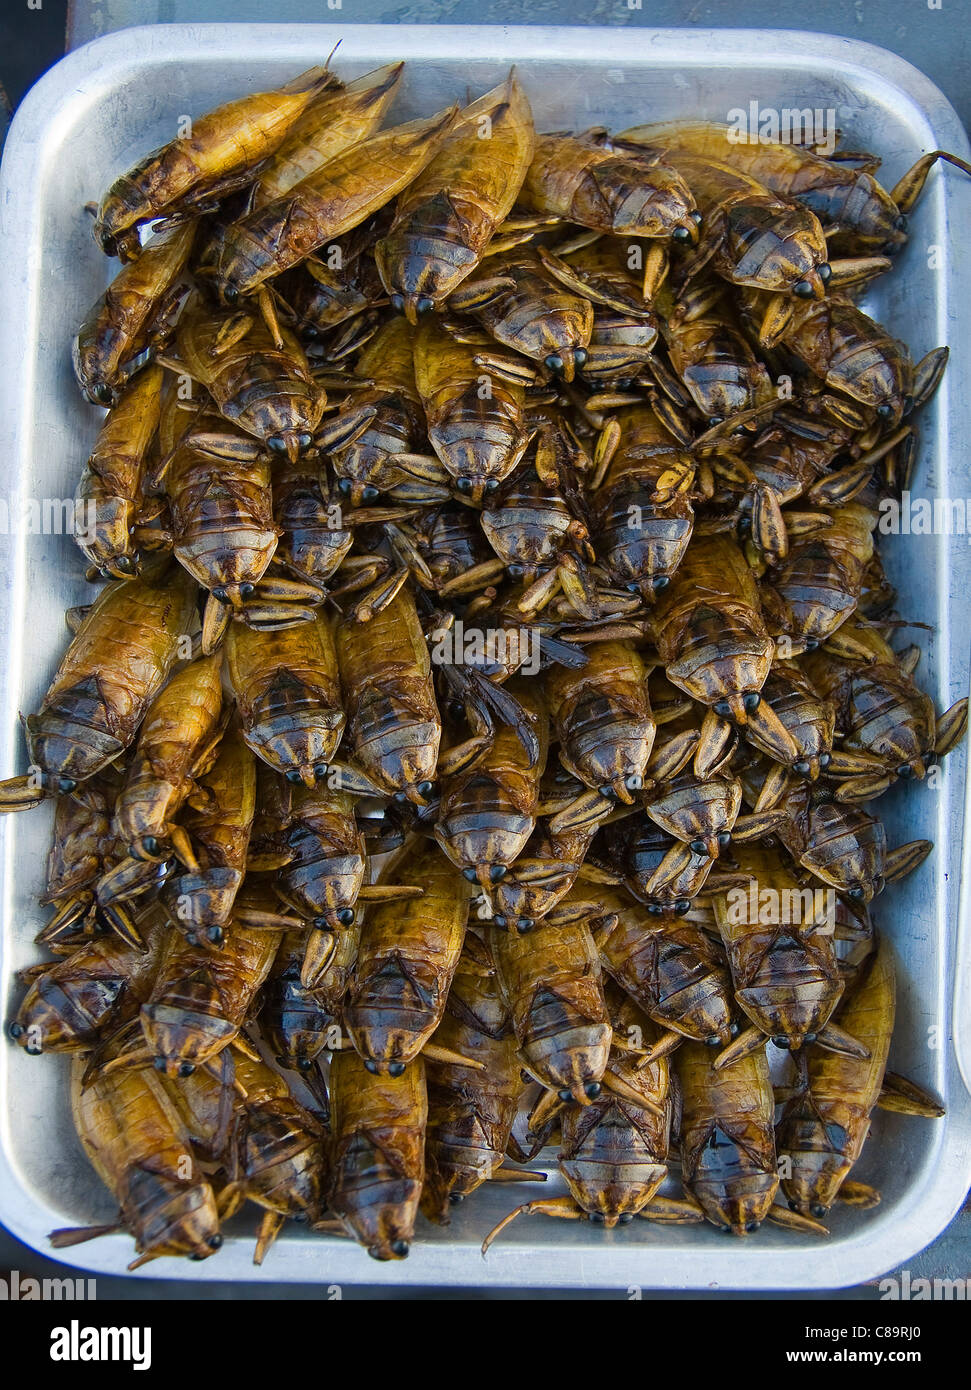 La Thaïlande, les coléoptères frits dans le bac Banque D'Images